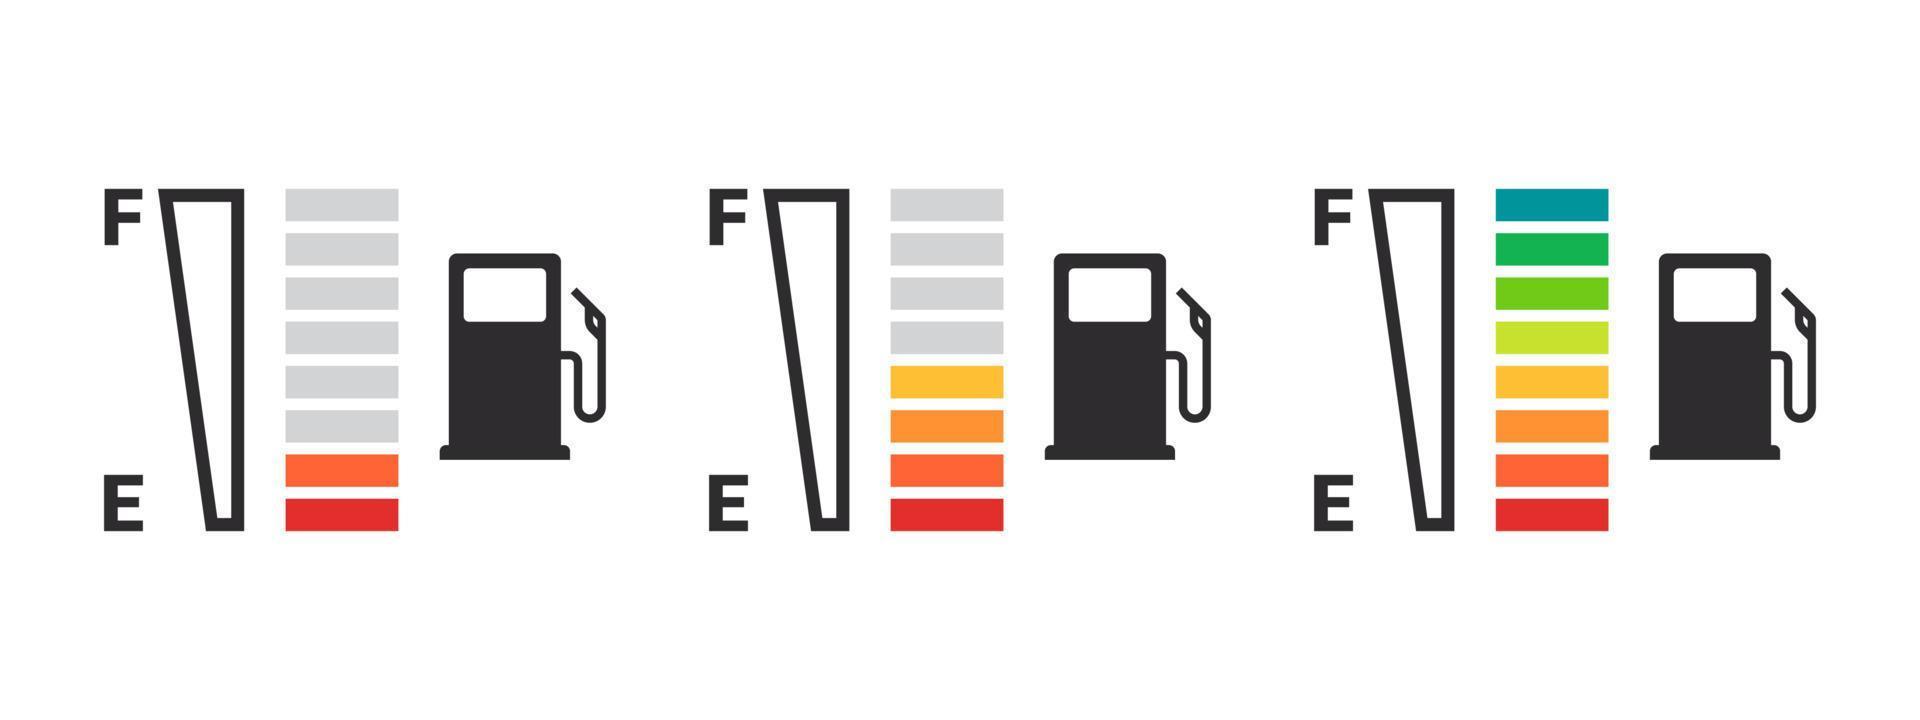 iconos del indicador de combustible del coche. indicador de gasolina concepto de indicador de combustible. Imágenes de vectores